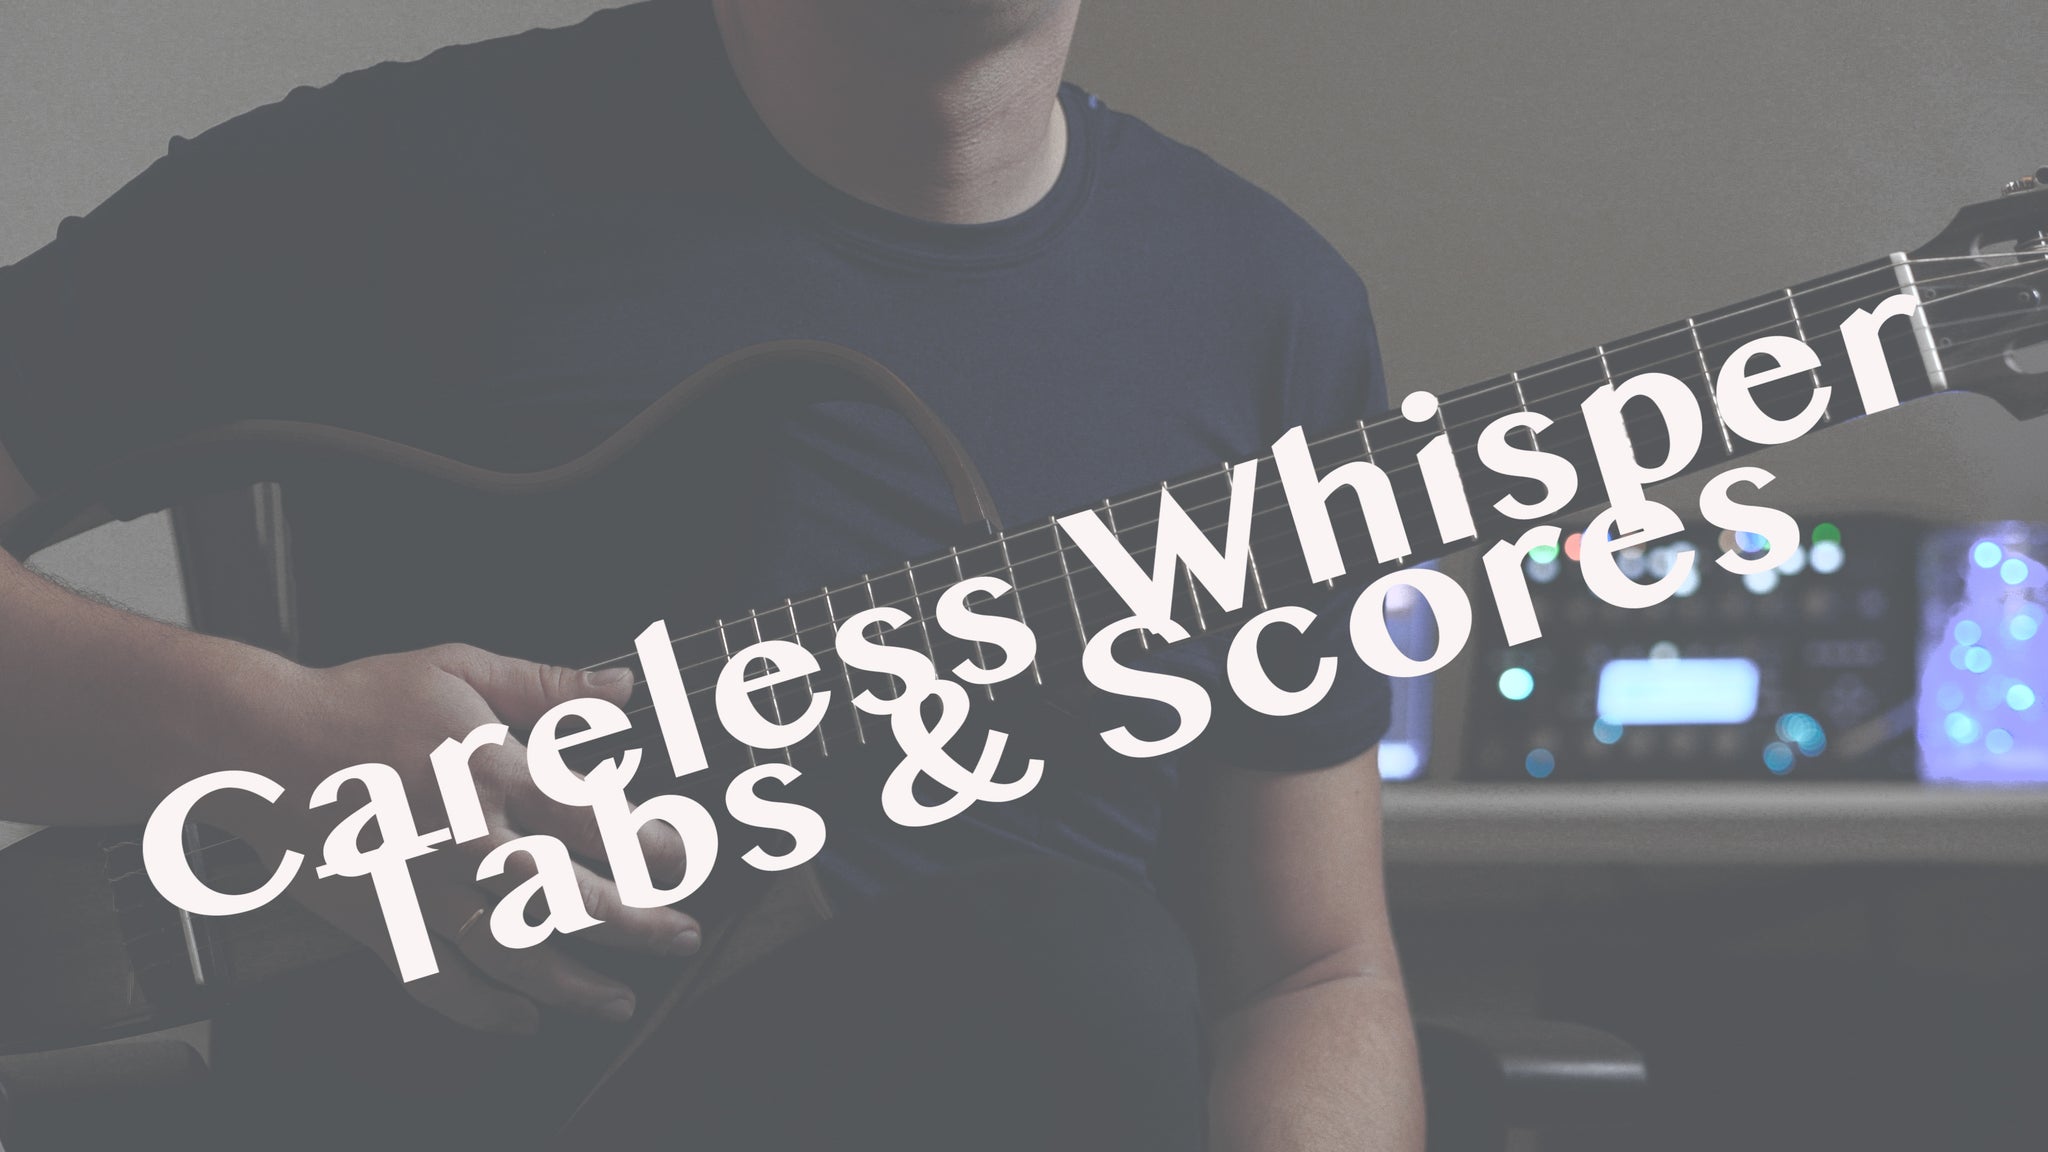 Careless Whisper - Arrangement for solo guitar